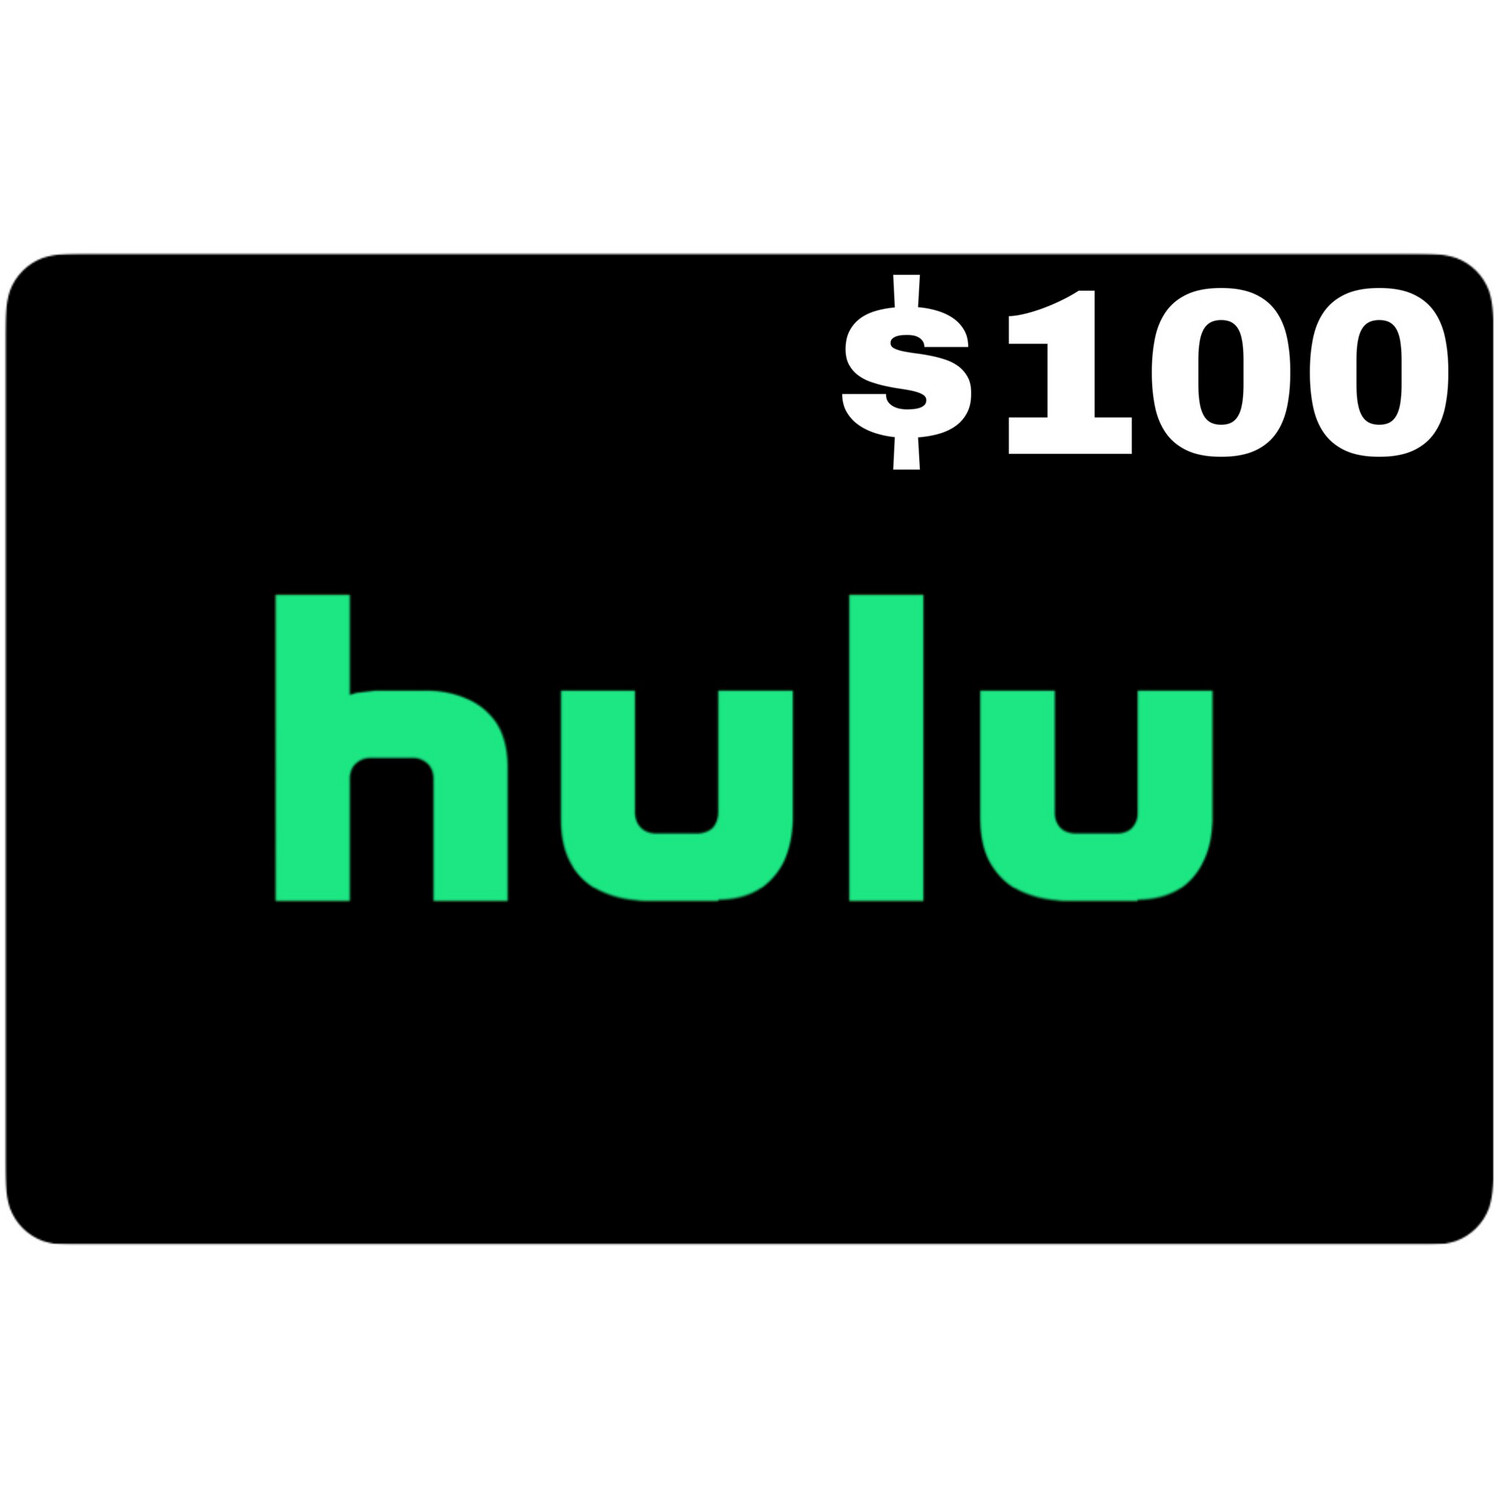 Hulu $100 Gift Card